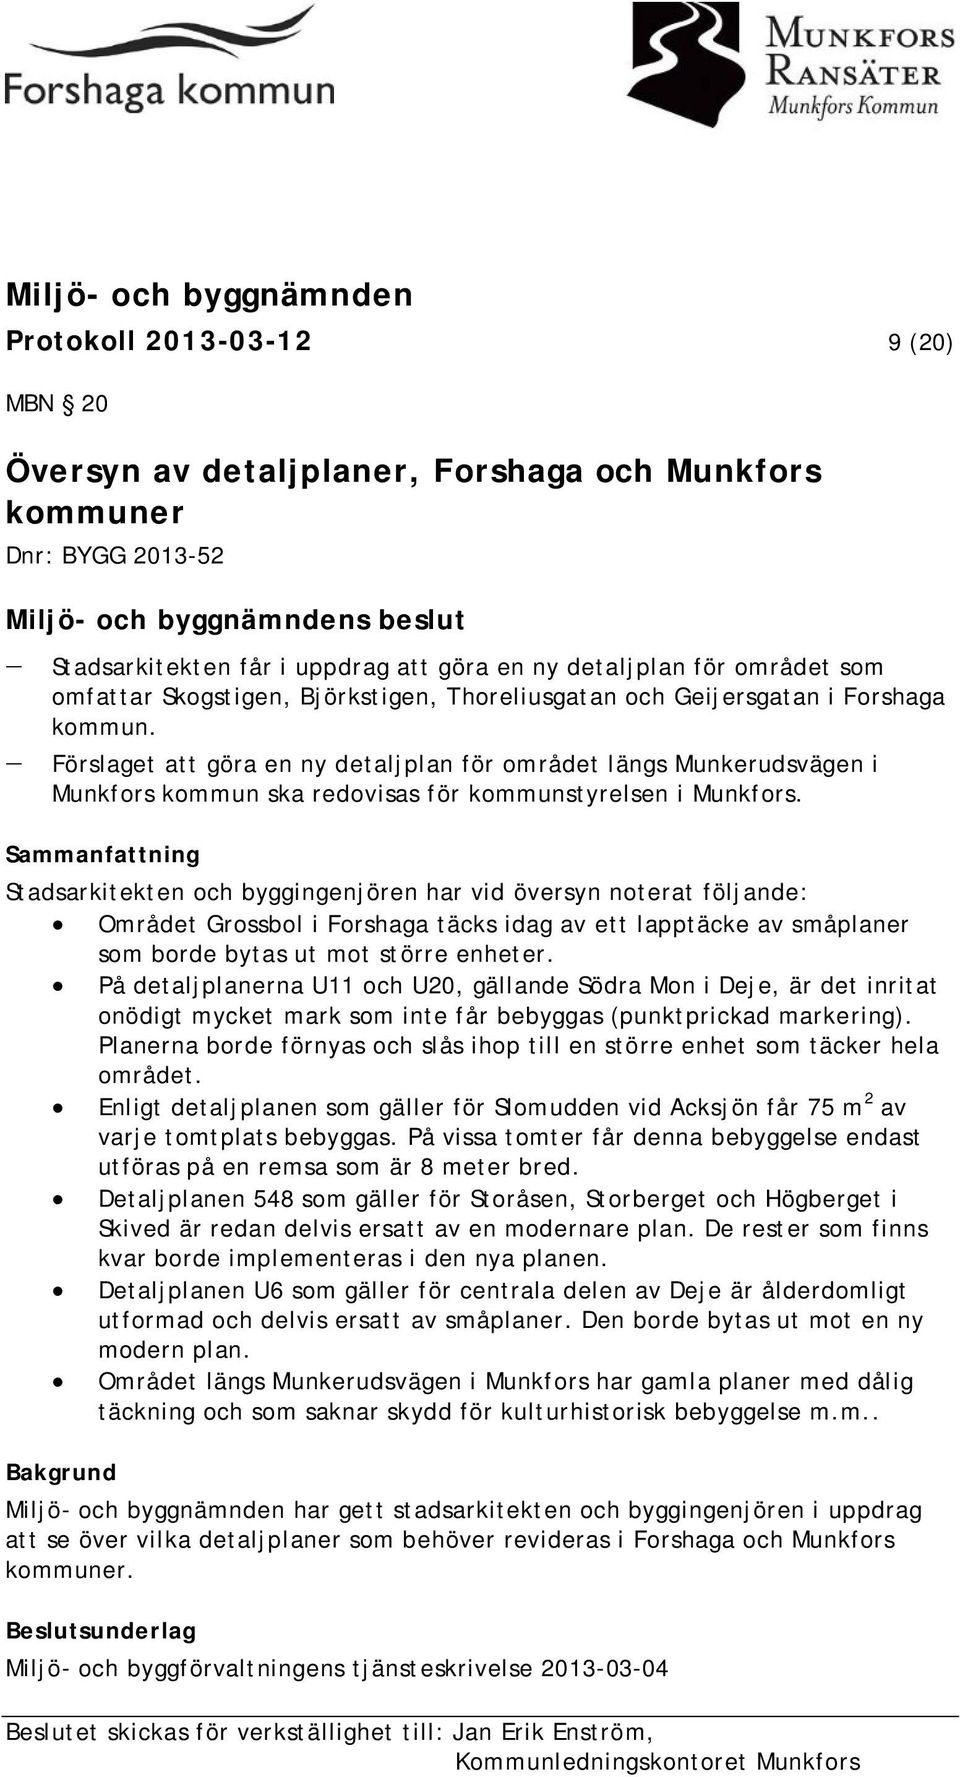 - Förslaget att göra en ny detaljplan för området längs Munkerudsvägen i Munkfors kommun ska redovisas för kommunstyrelsen i Munkfors.